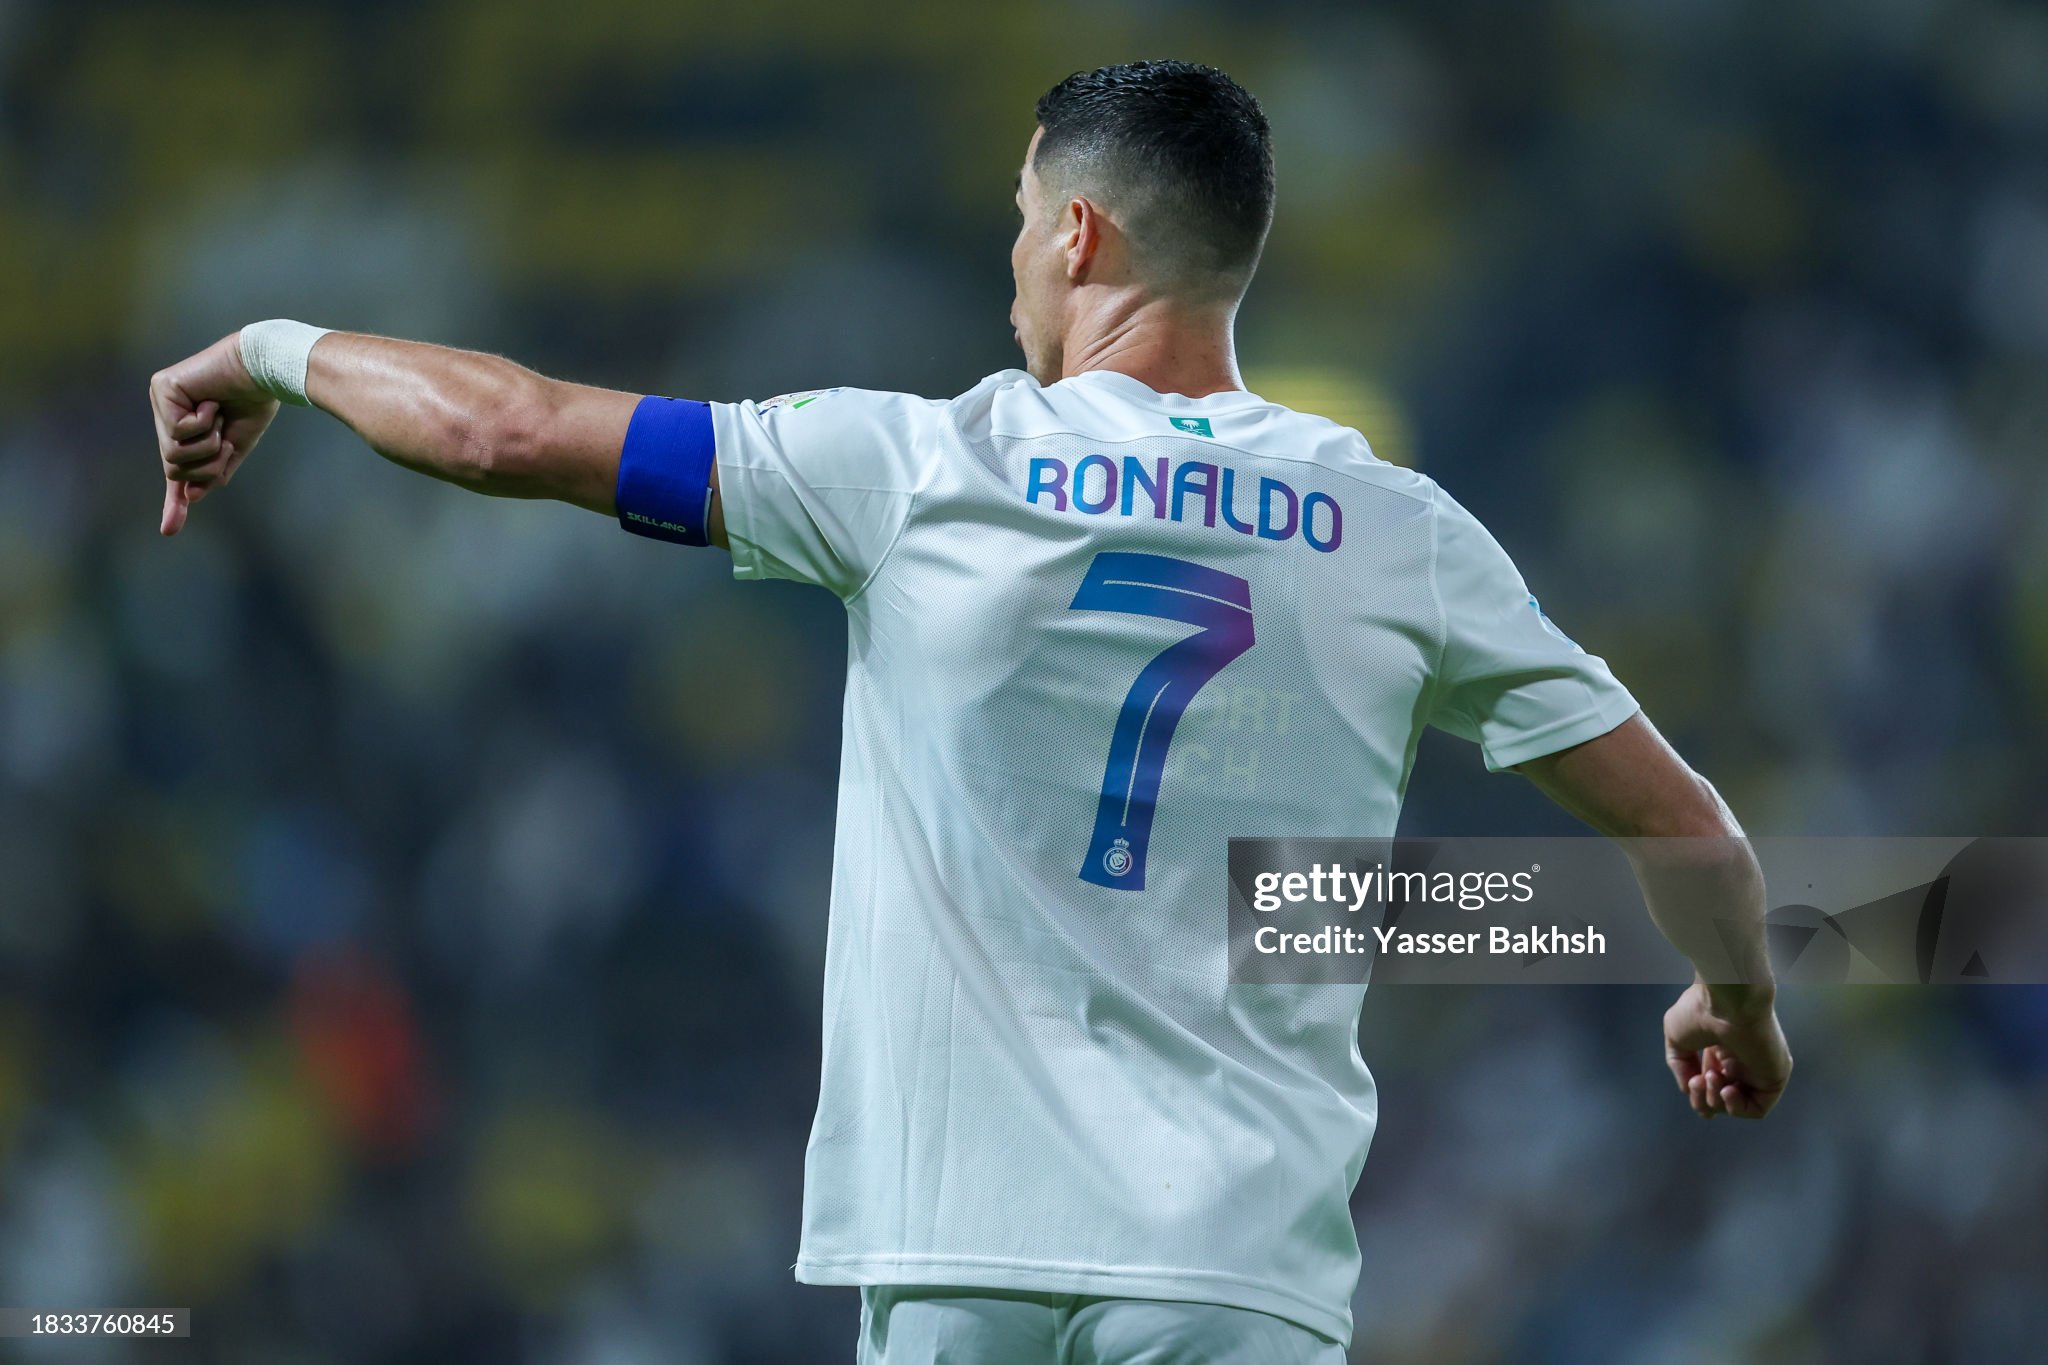 Ronaldo reaches insane milestone: 'I want to keep going for now'